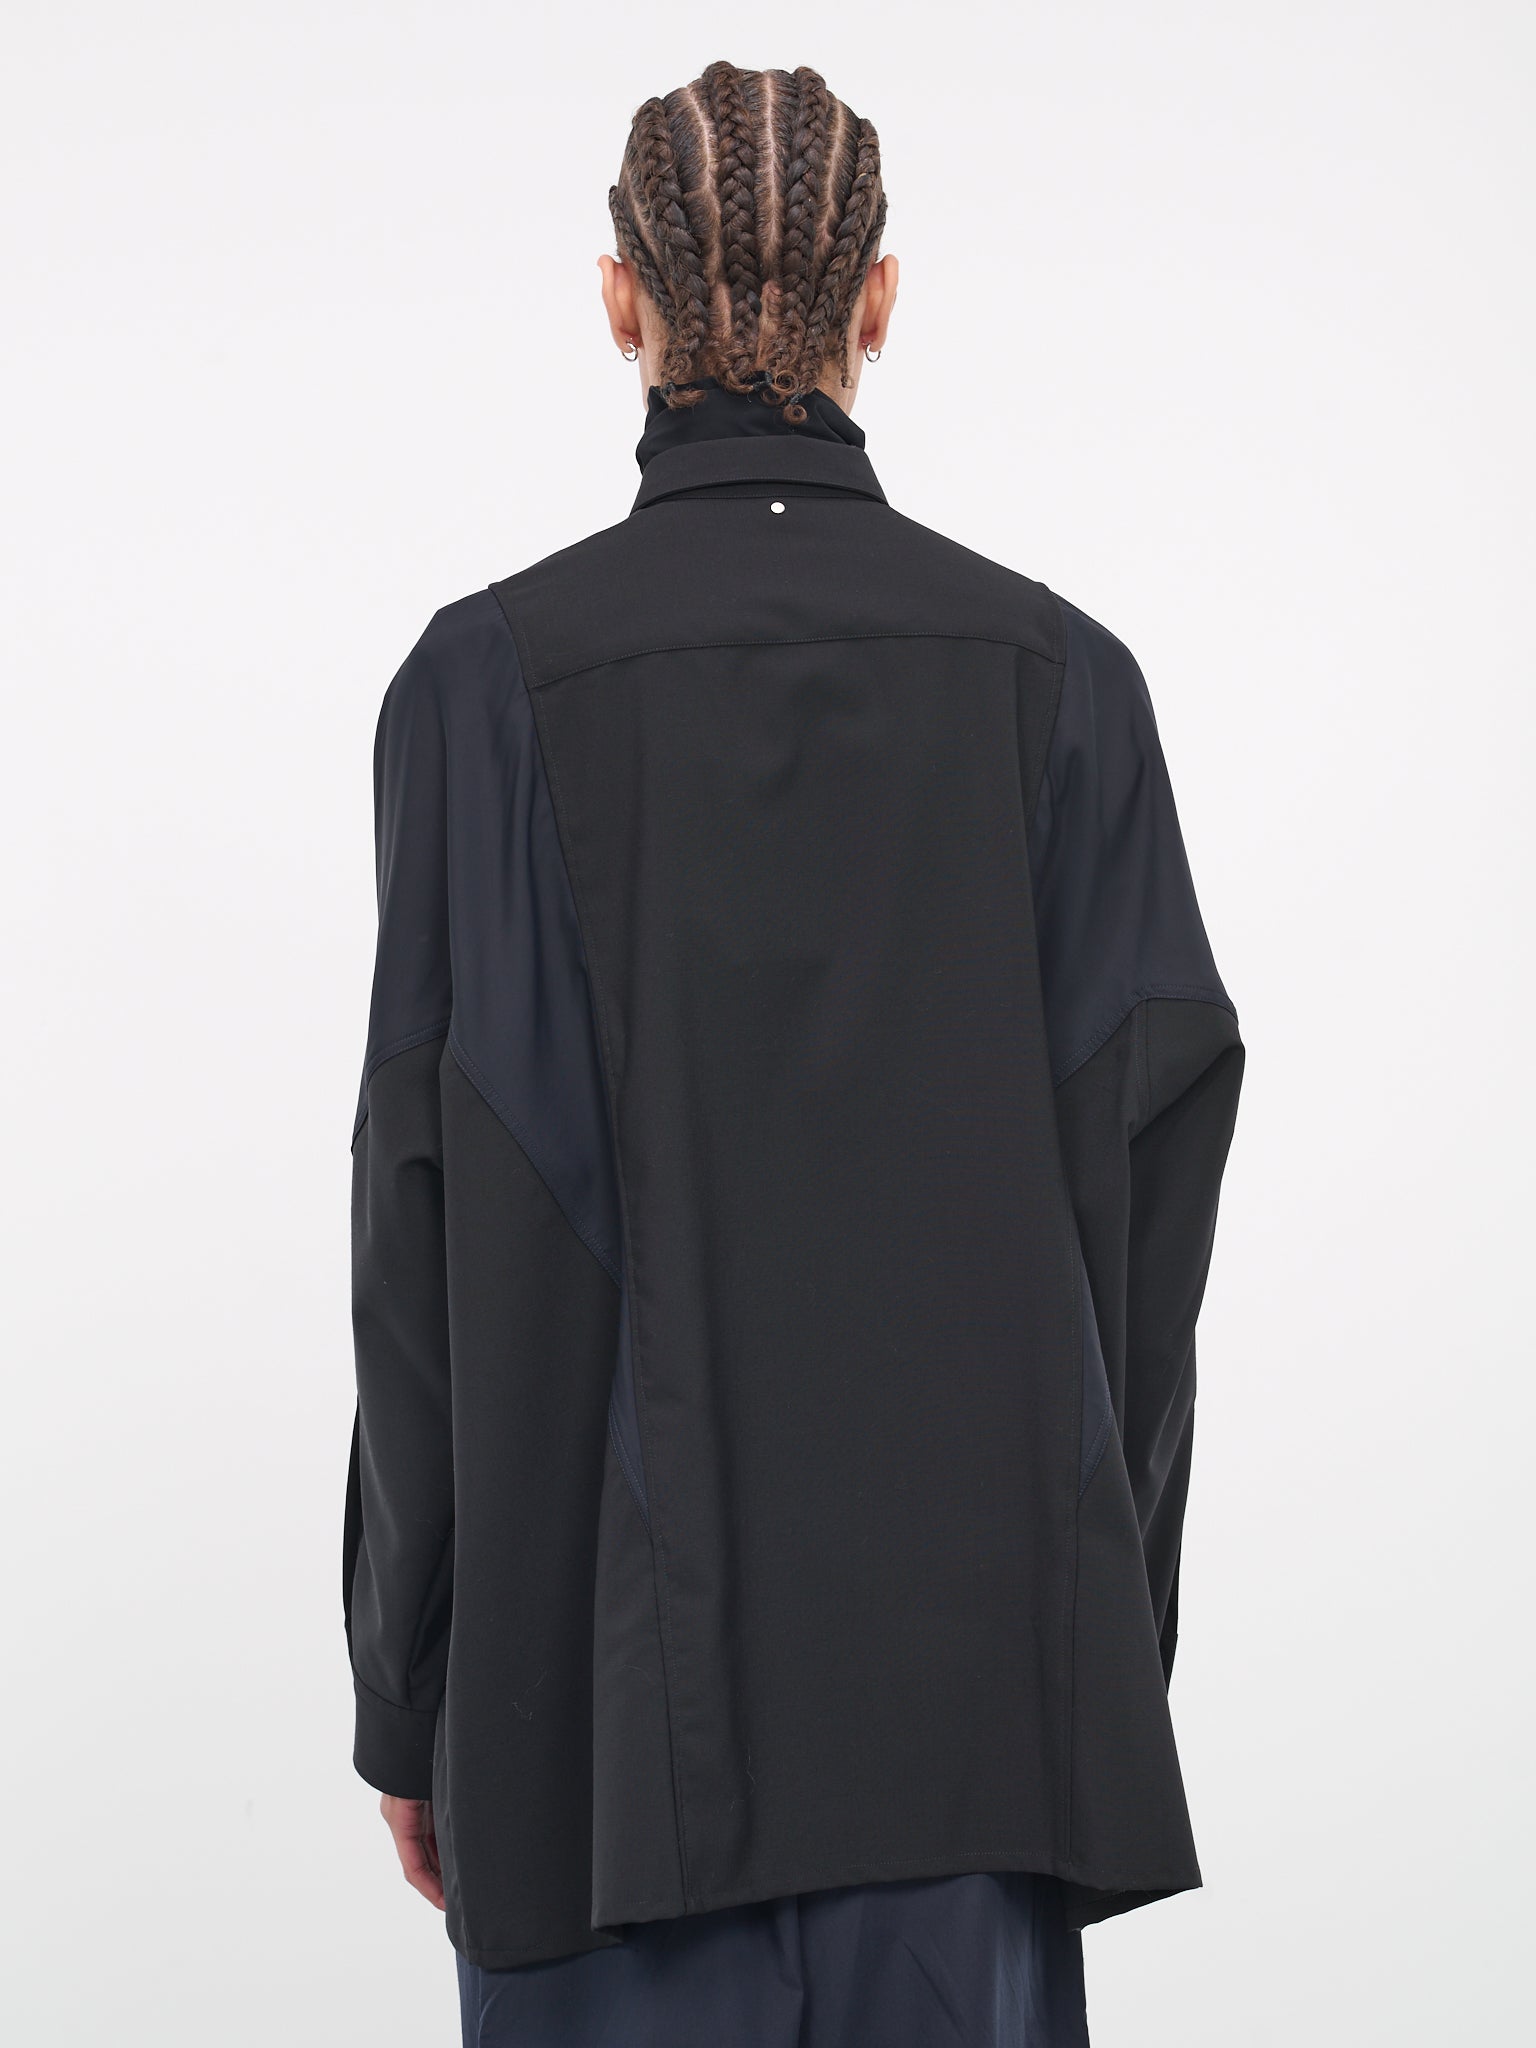 Paneled Shirt (OAU01-001-BLACK)